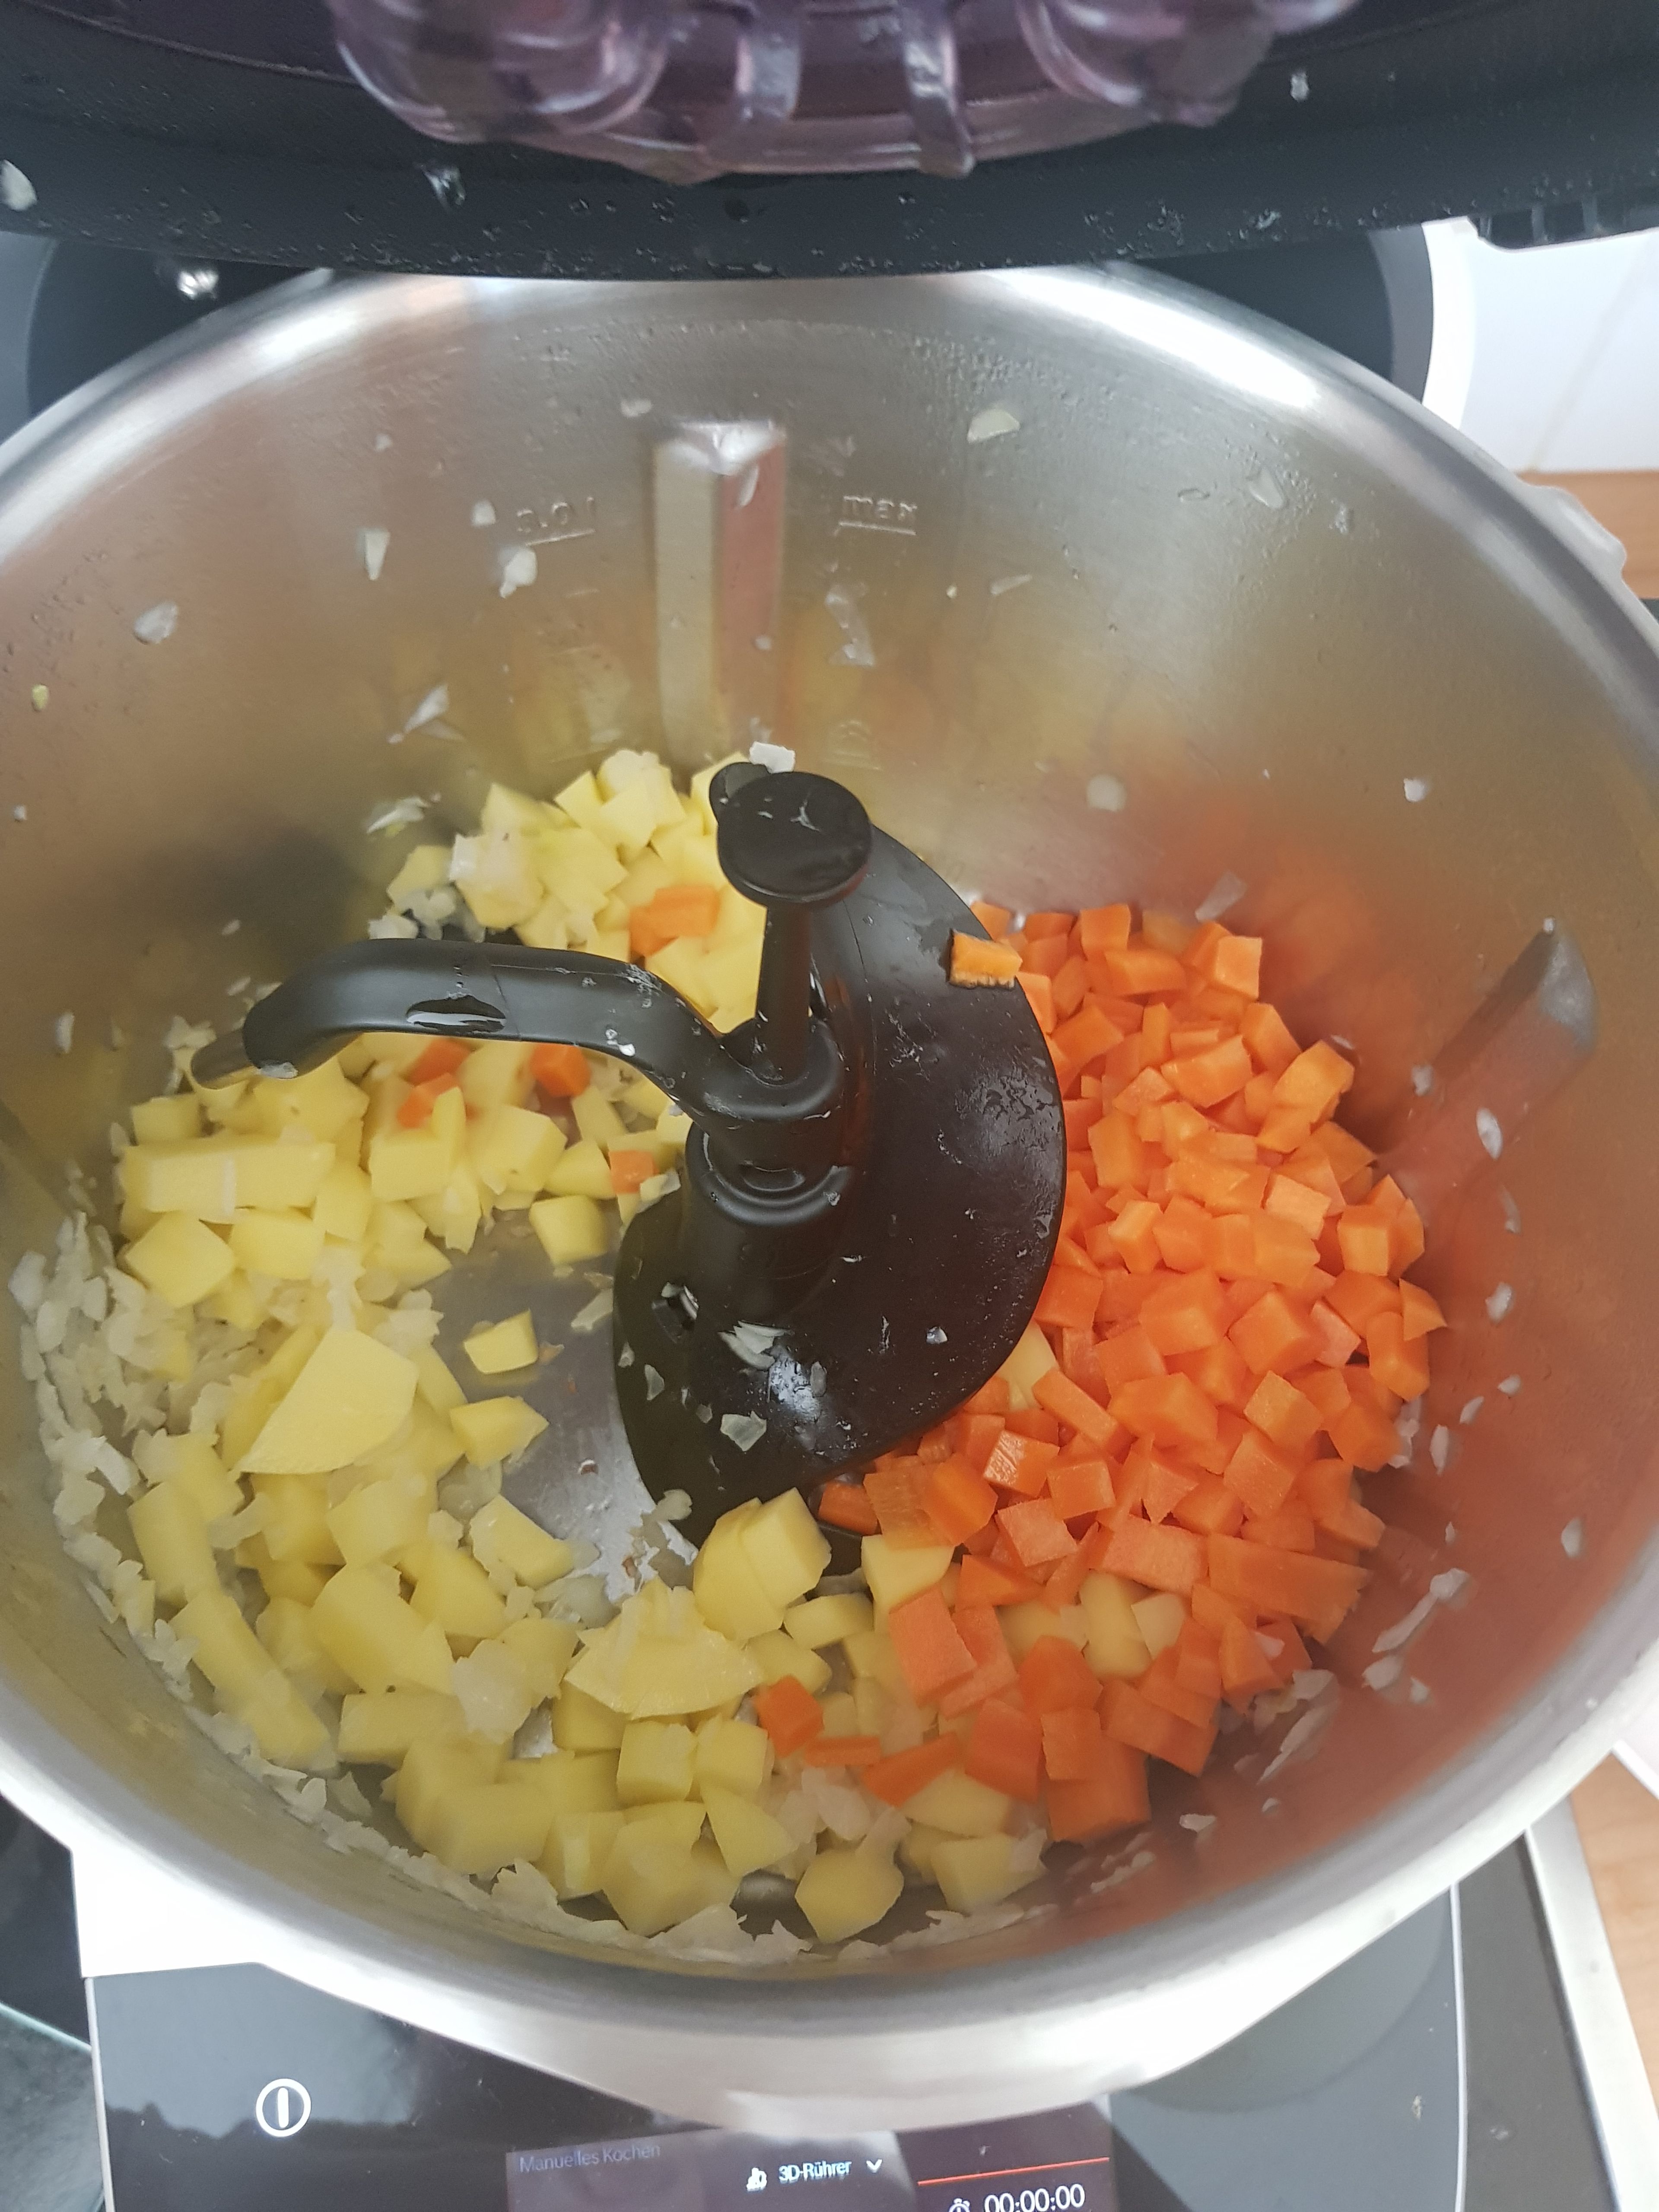 Die Kartoffeln, Karotten und Tomaten in ca. 0,5 cm kleine Würfel schneiden und beiseite stellen. Universalmesser einsetzen, die Zwiebeln in den Cookit geben, den Deckel mit Messbecher schließen und zerkleinern (Universalmesser | Stufe 12 | 5 Min.). Universalmesser entfernen und 3D-Rührer einsetzen. Das Öl einwiegen und die Zwiebeln in Öl bei geschlossenem Deckel, ohne Messbecher, anrösten (3D-Rührer | Stufe 5 | 160°C |4 Min.). Kartoffeln und Karotten in den Topf geben, Deckel ohne Messbecher schließen und mit anbraten (3D-Rührer | Stufe 5 | 160°C | 3:30 Min.).